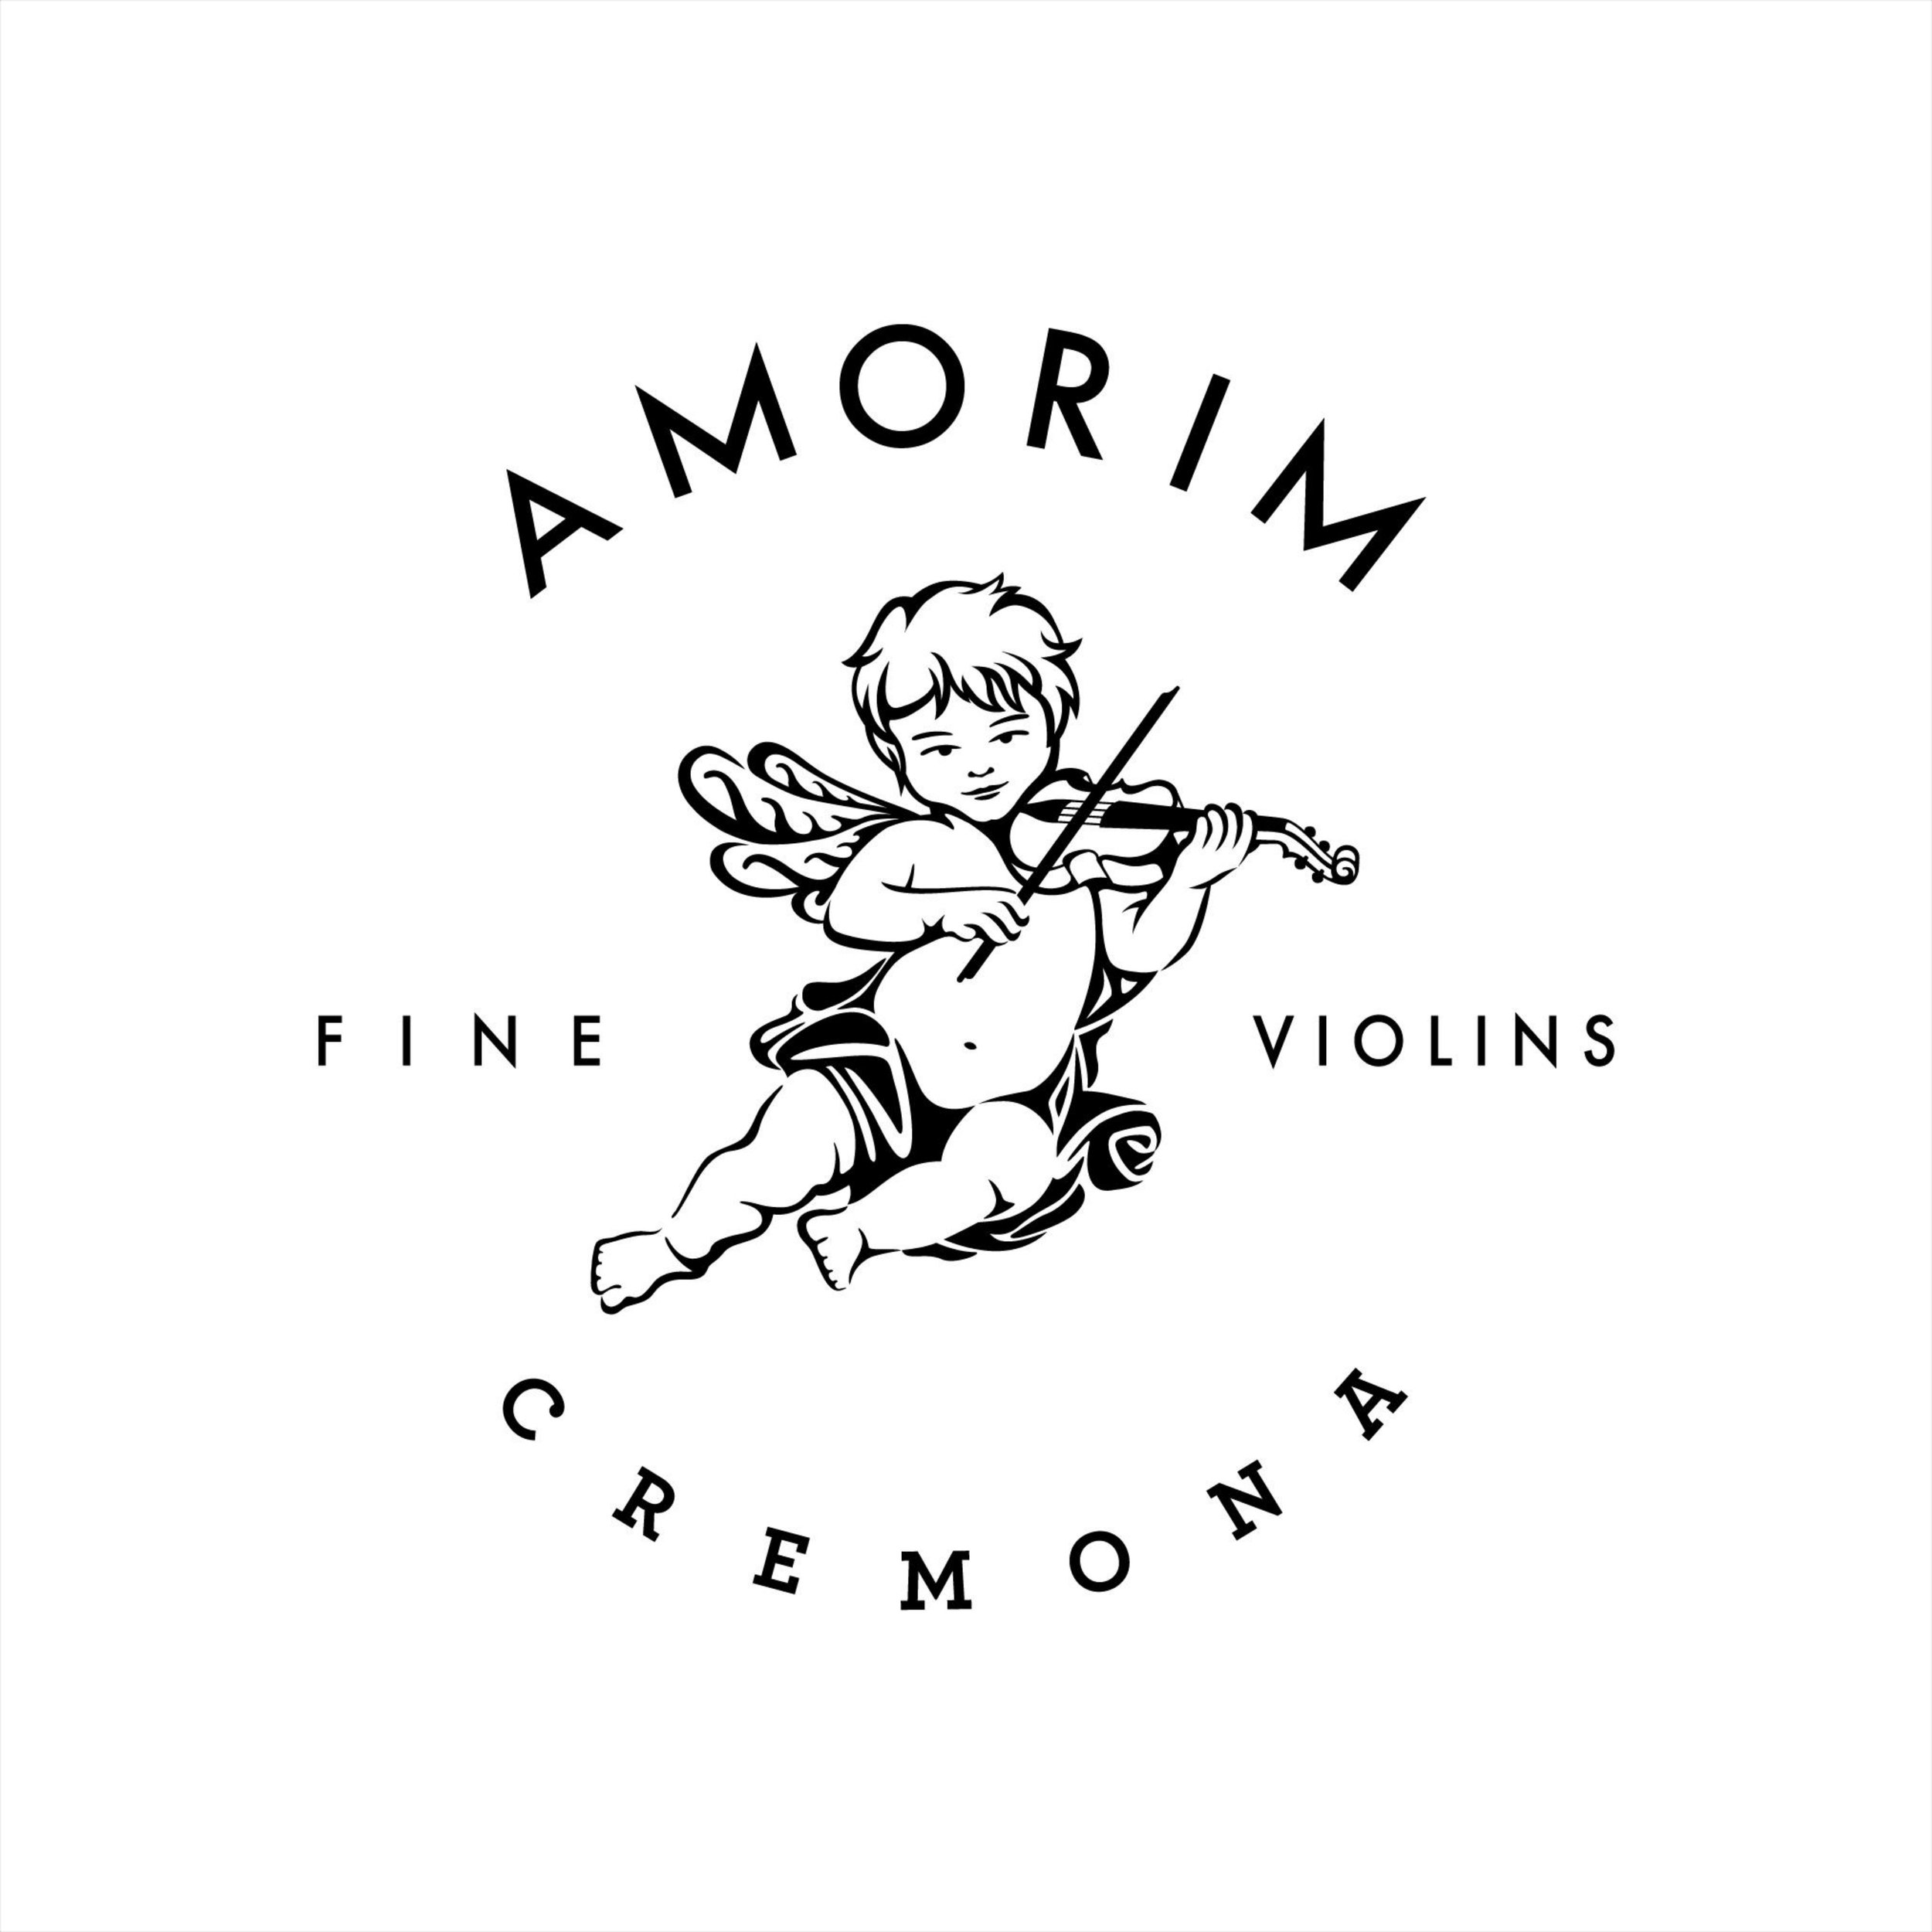 Amorim Fine Violins Cremona